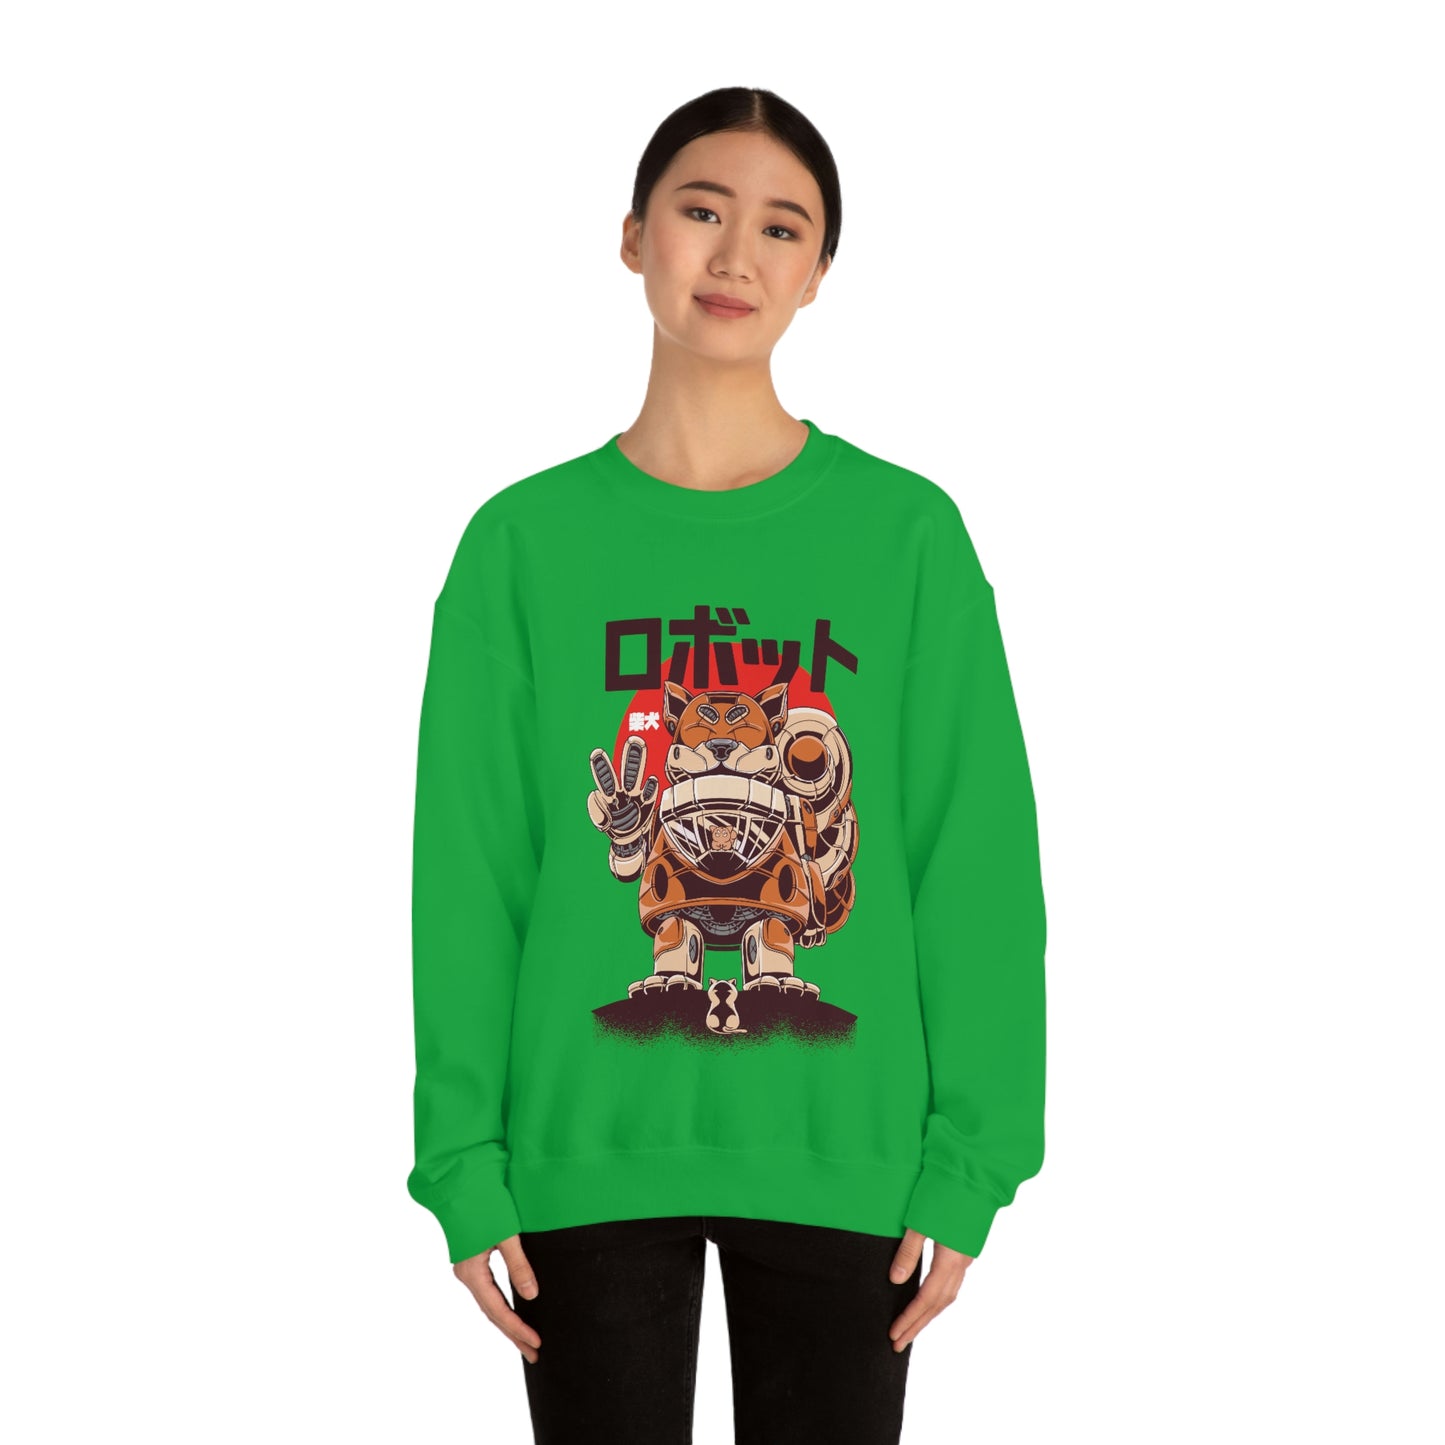 Kawaii Sweatshirt, Kawaii Clothing, Kawaii Clothes, Yami Kawaii Aesthetic, Pastel Kawaii Sweatshirt Shiba Sweater Sweatshirt